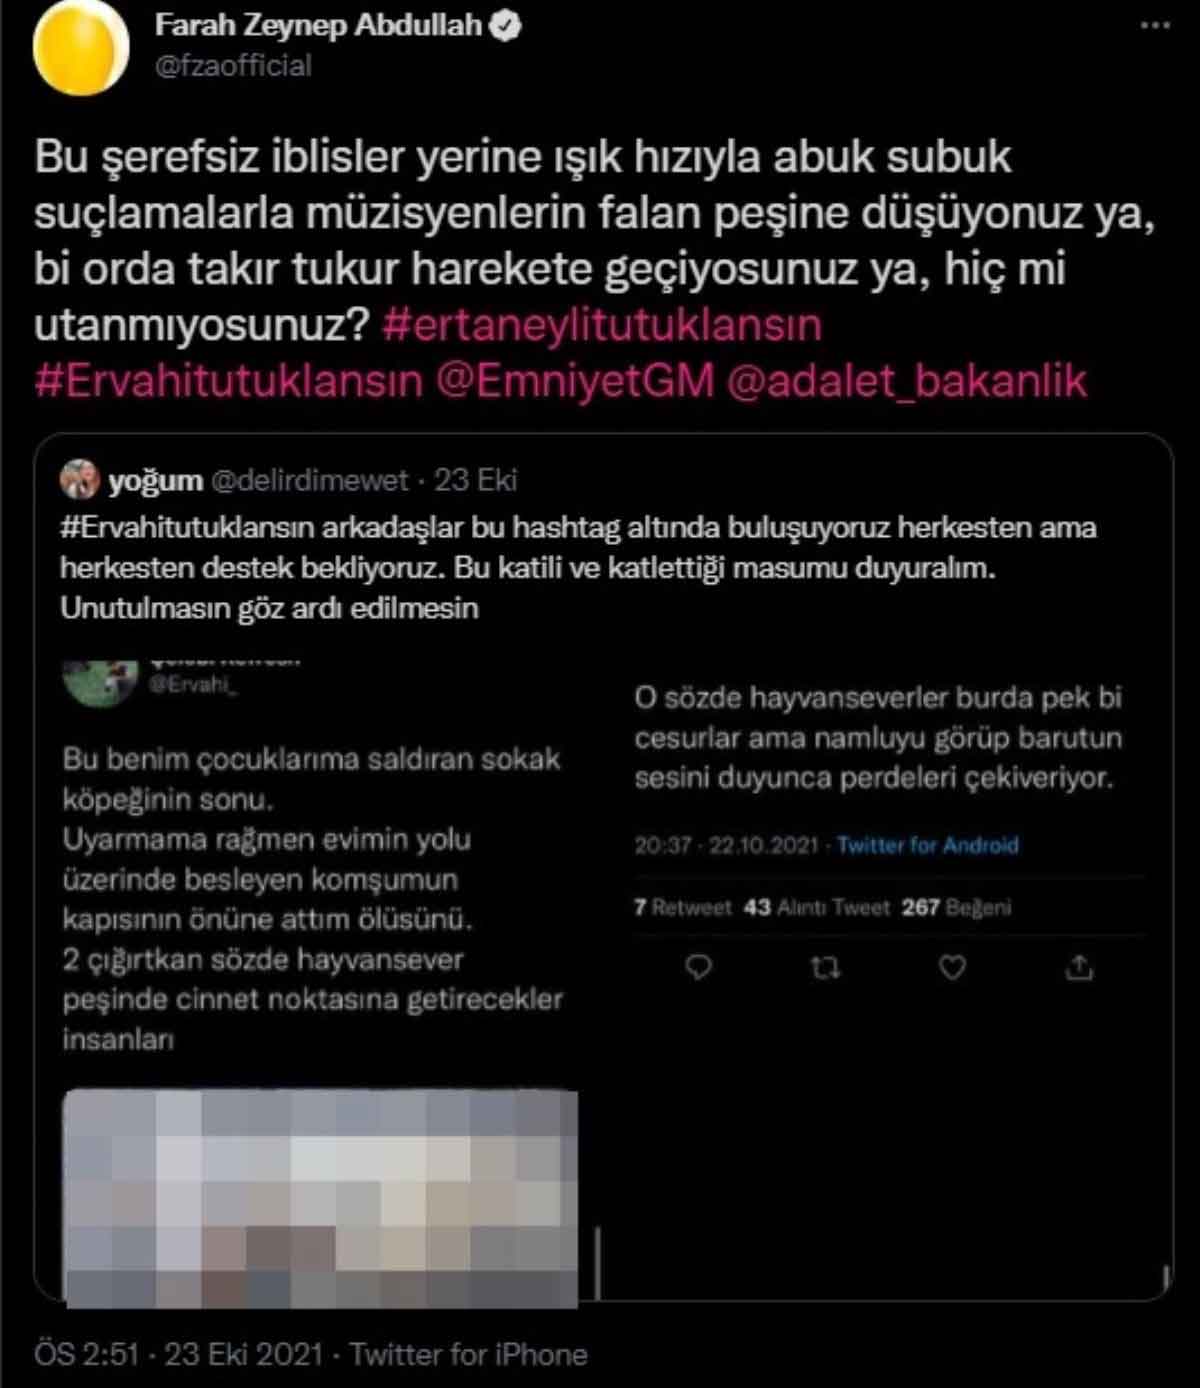 Farah Zeynep Abdullah'tan sosyal medyadaki görüntülere sert tepki: "Katillere verilen güce bak!"